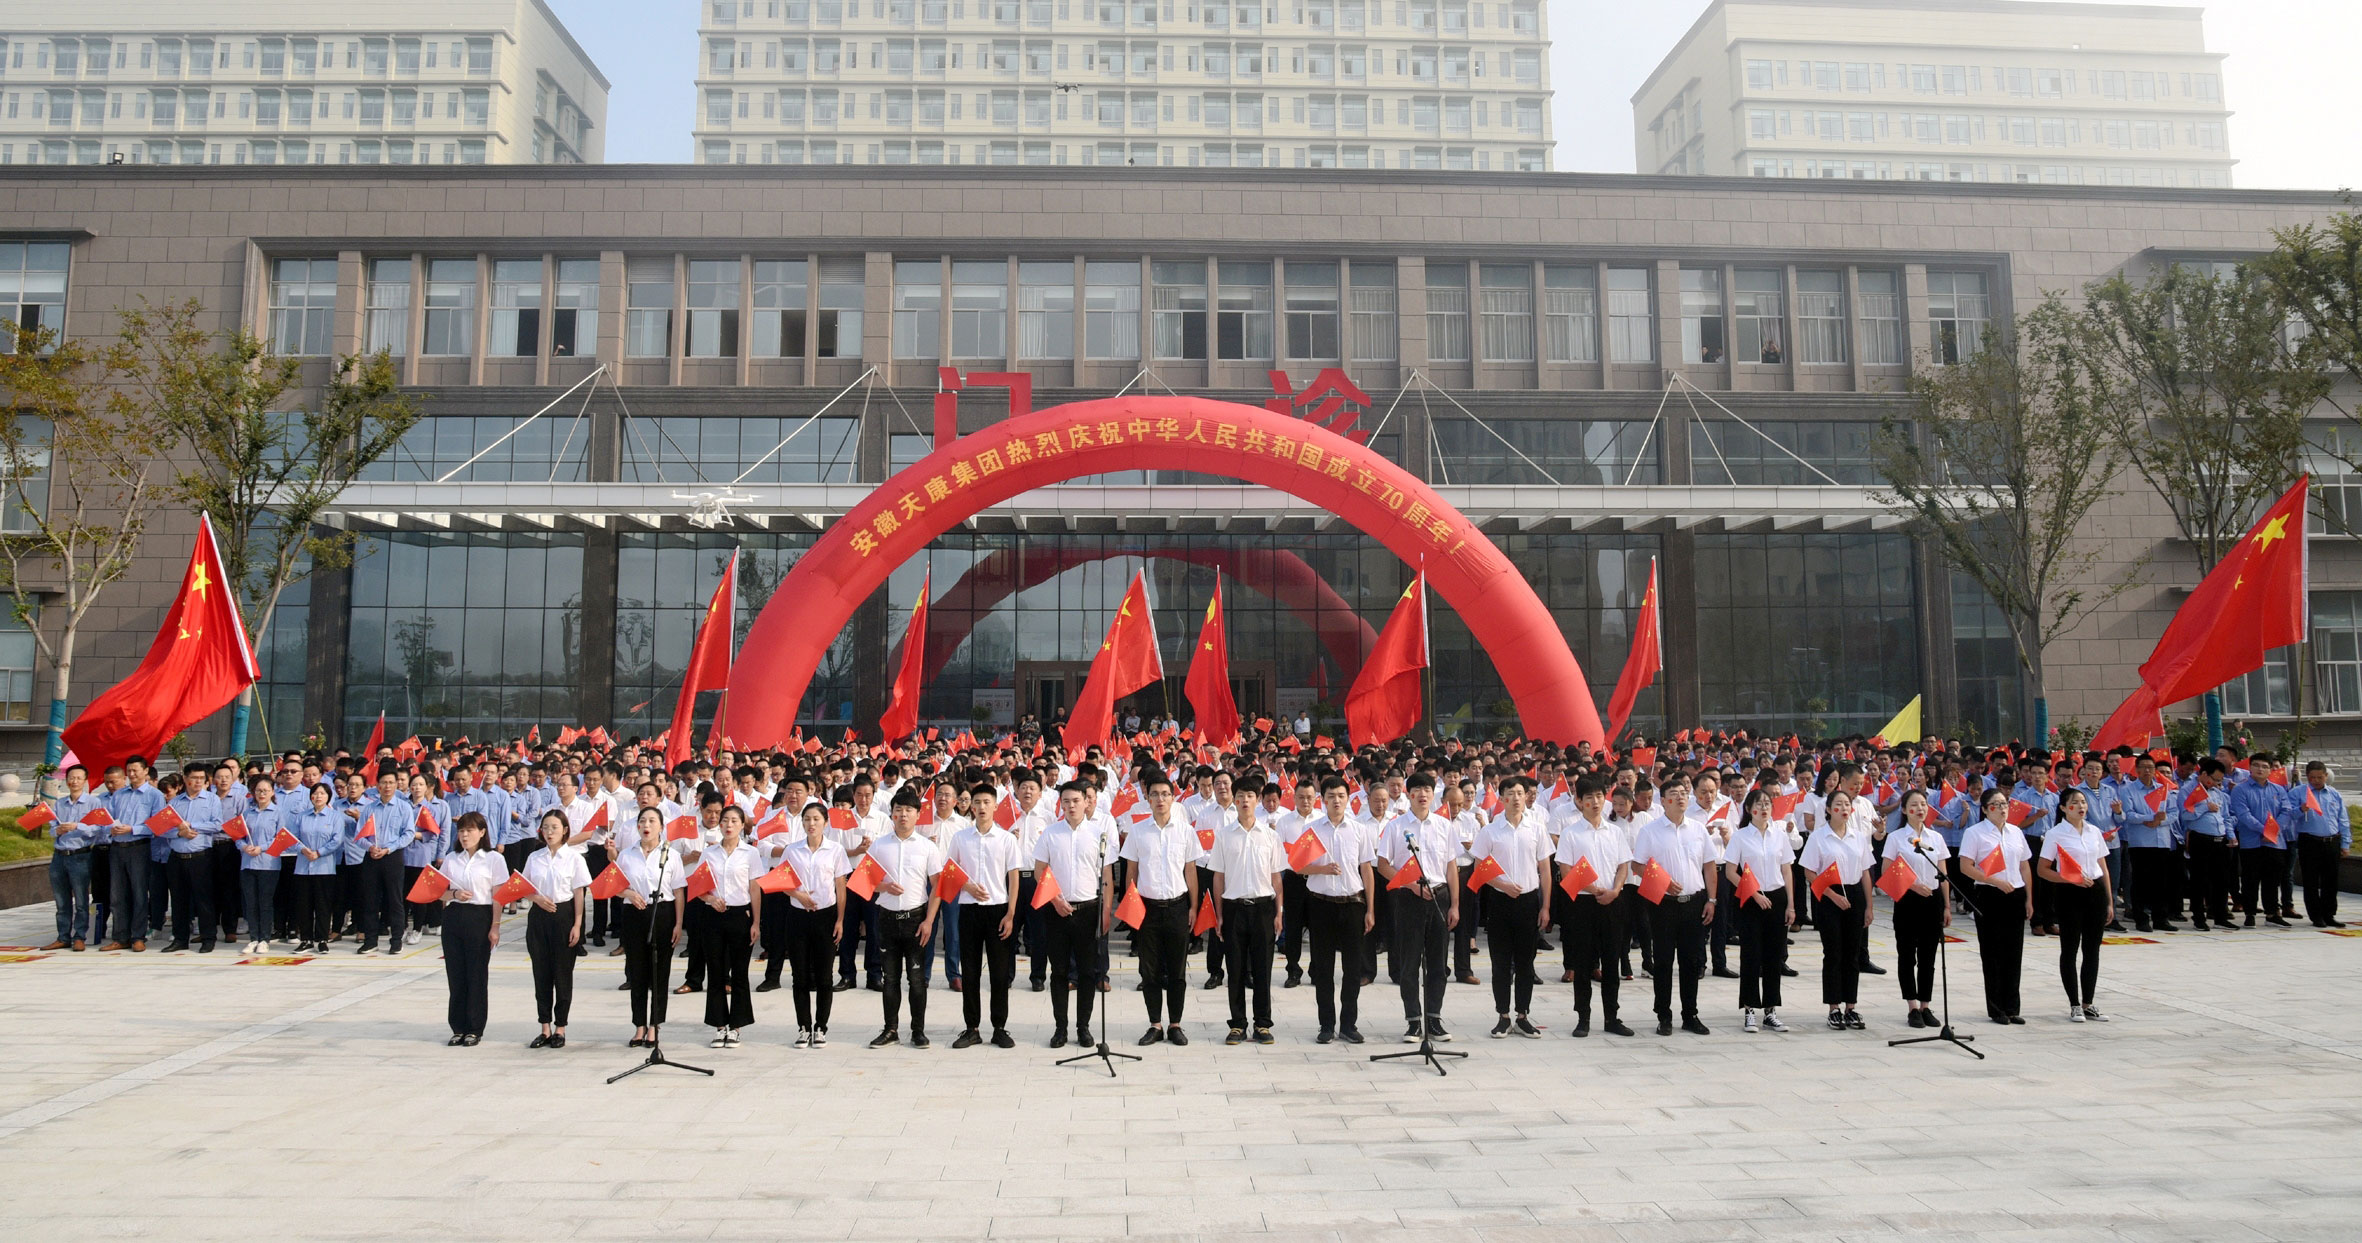 安徽天康集团举行升旗仪式庆贺中华人民共和国成立70周年